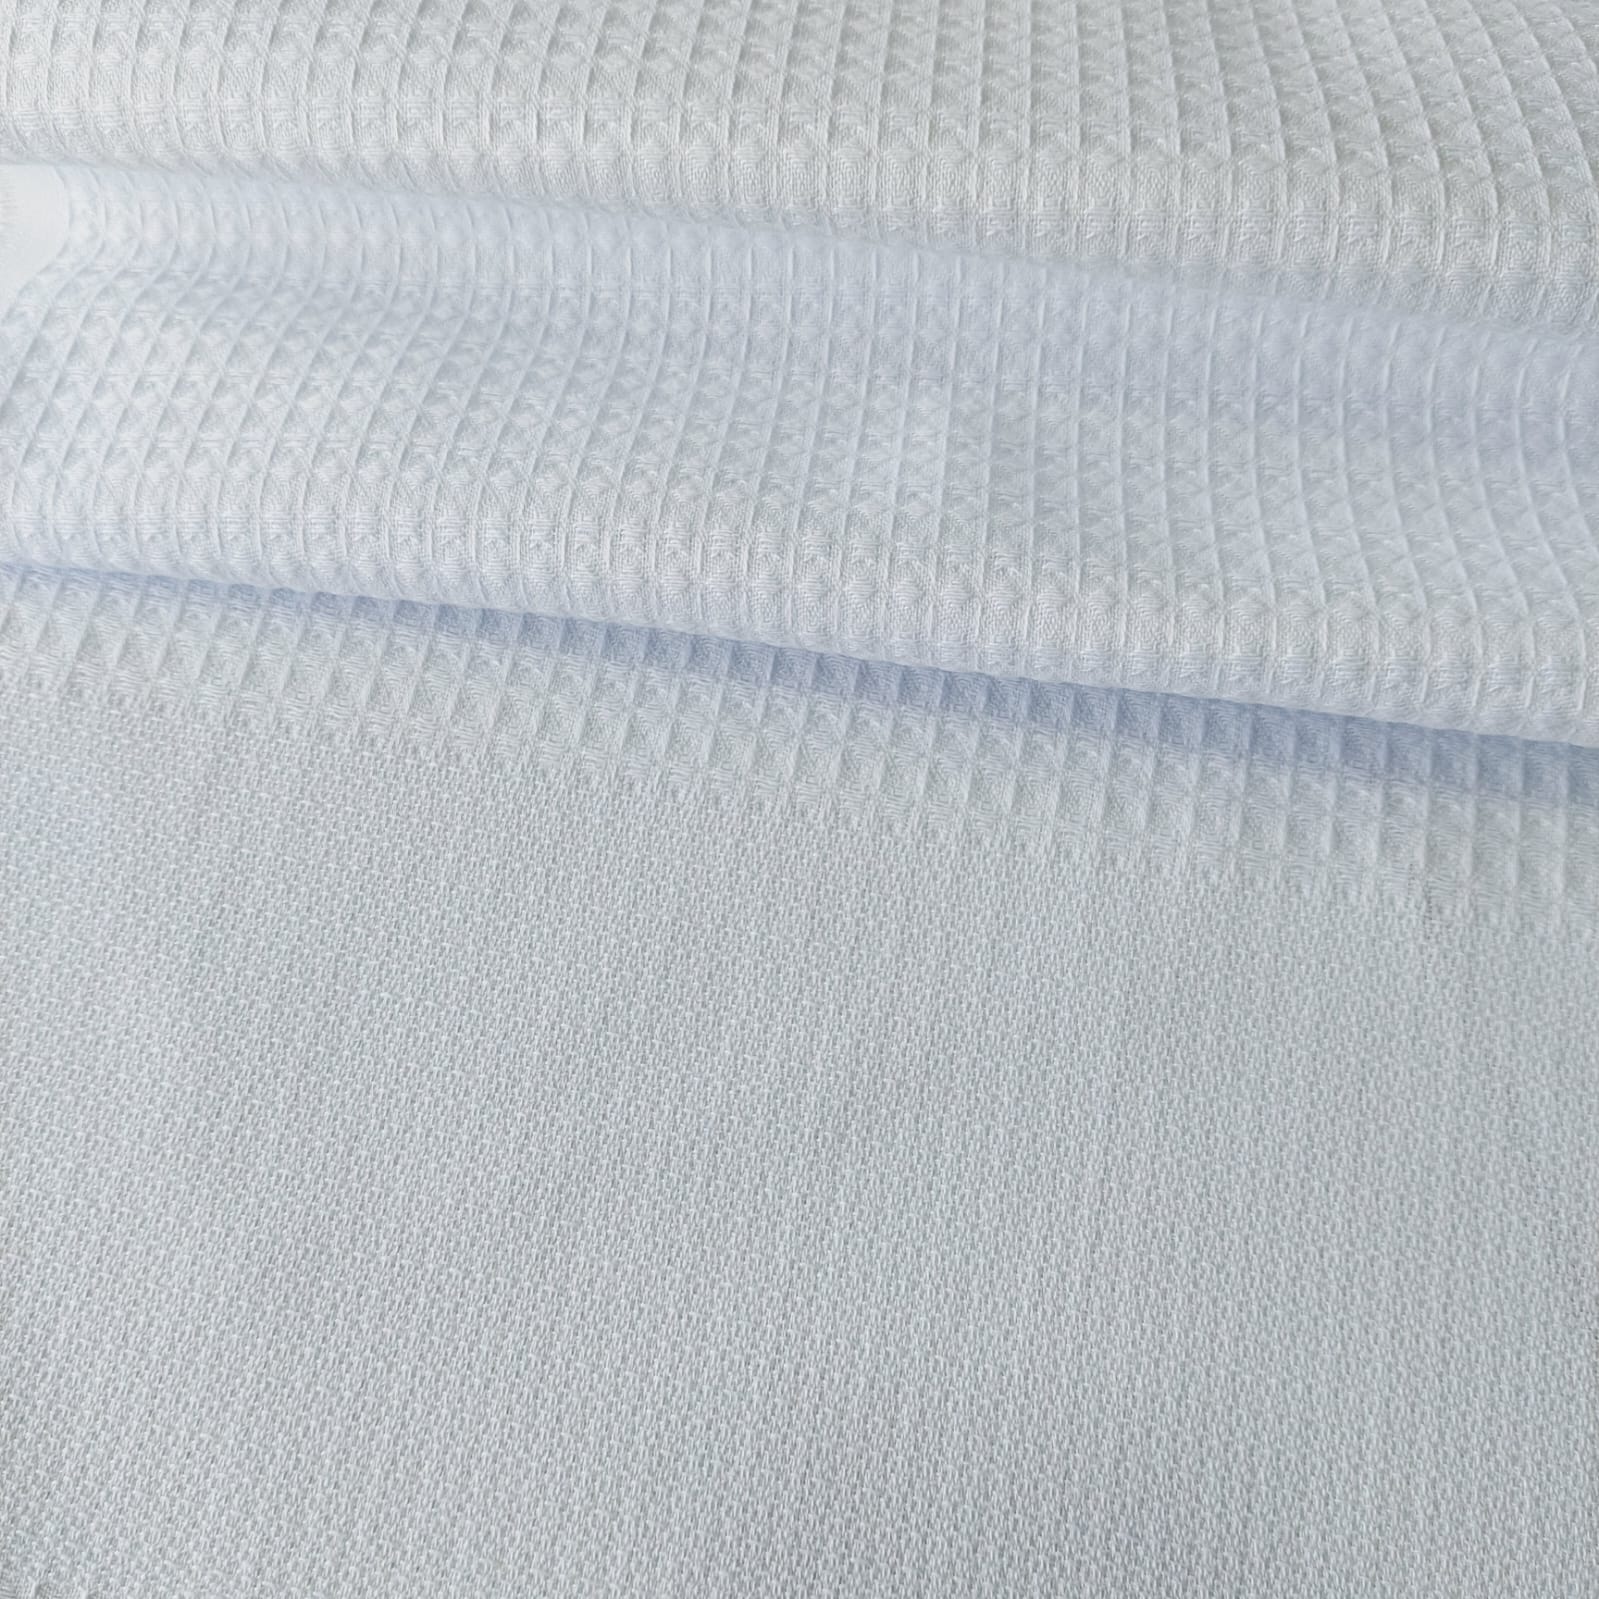 Pano d prato atoalhado bordado no tecido xadrez com bico em crochê.